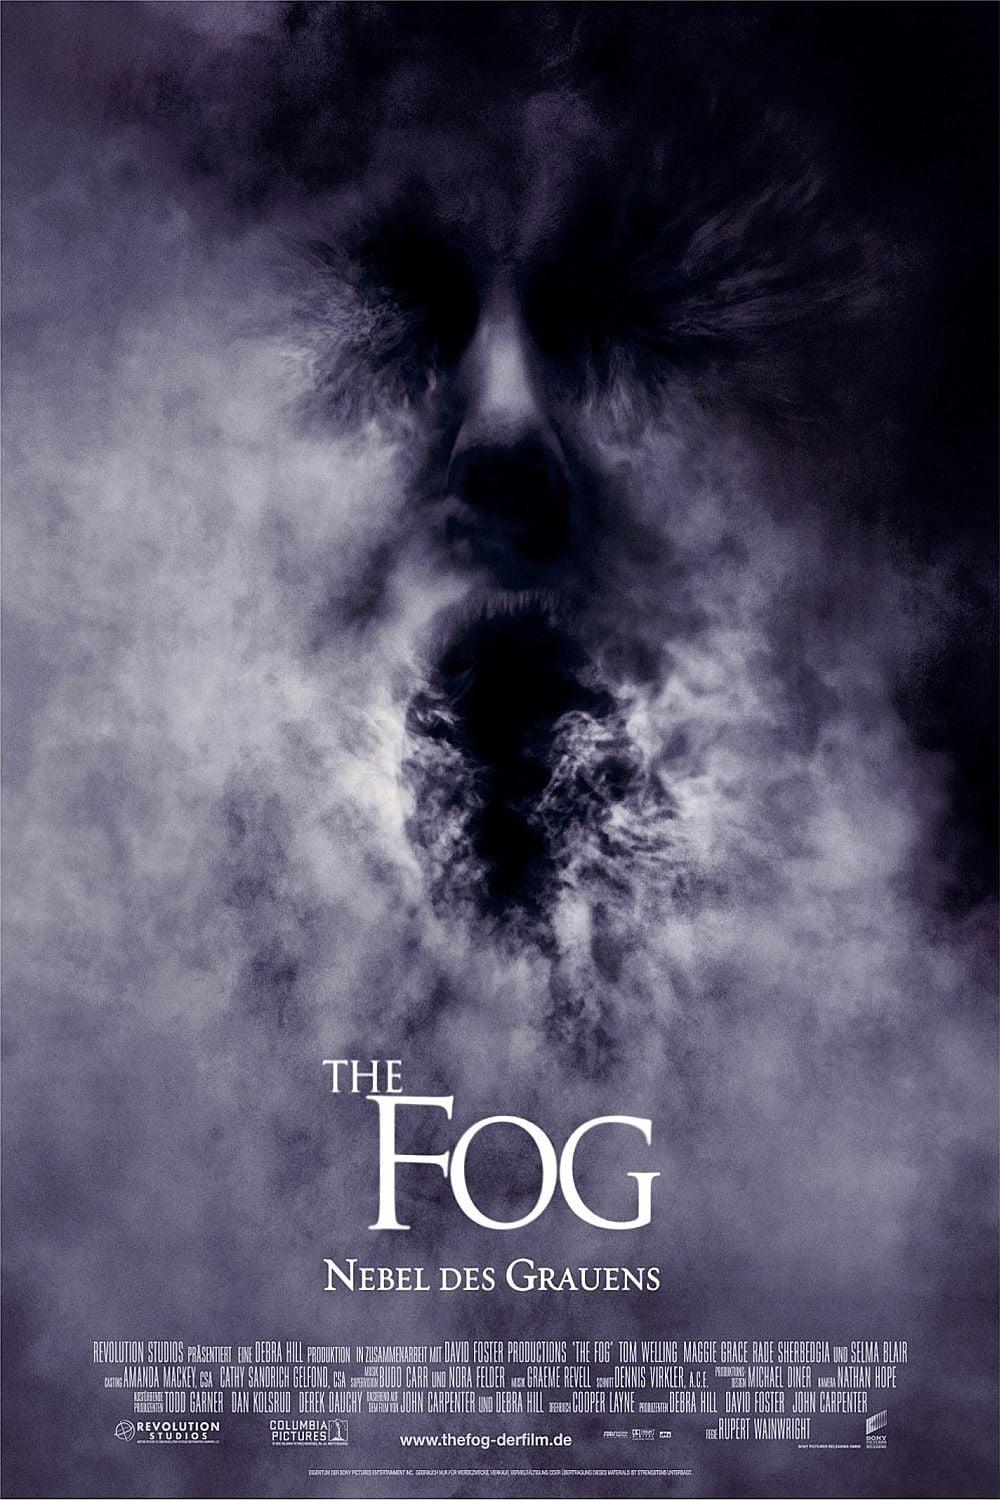 The Fog - Nebel des Grauens poster